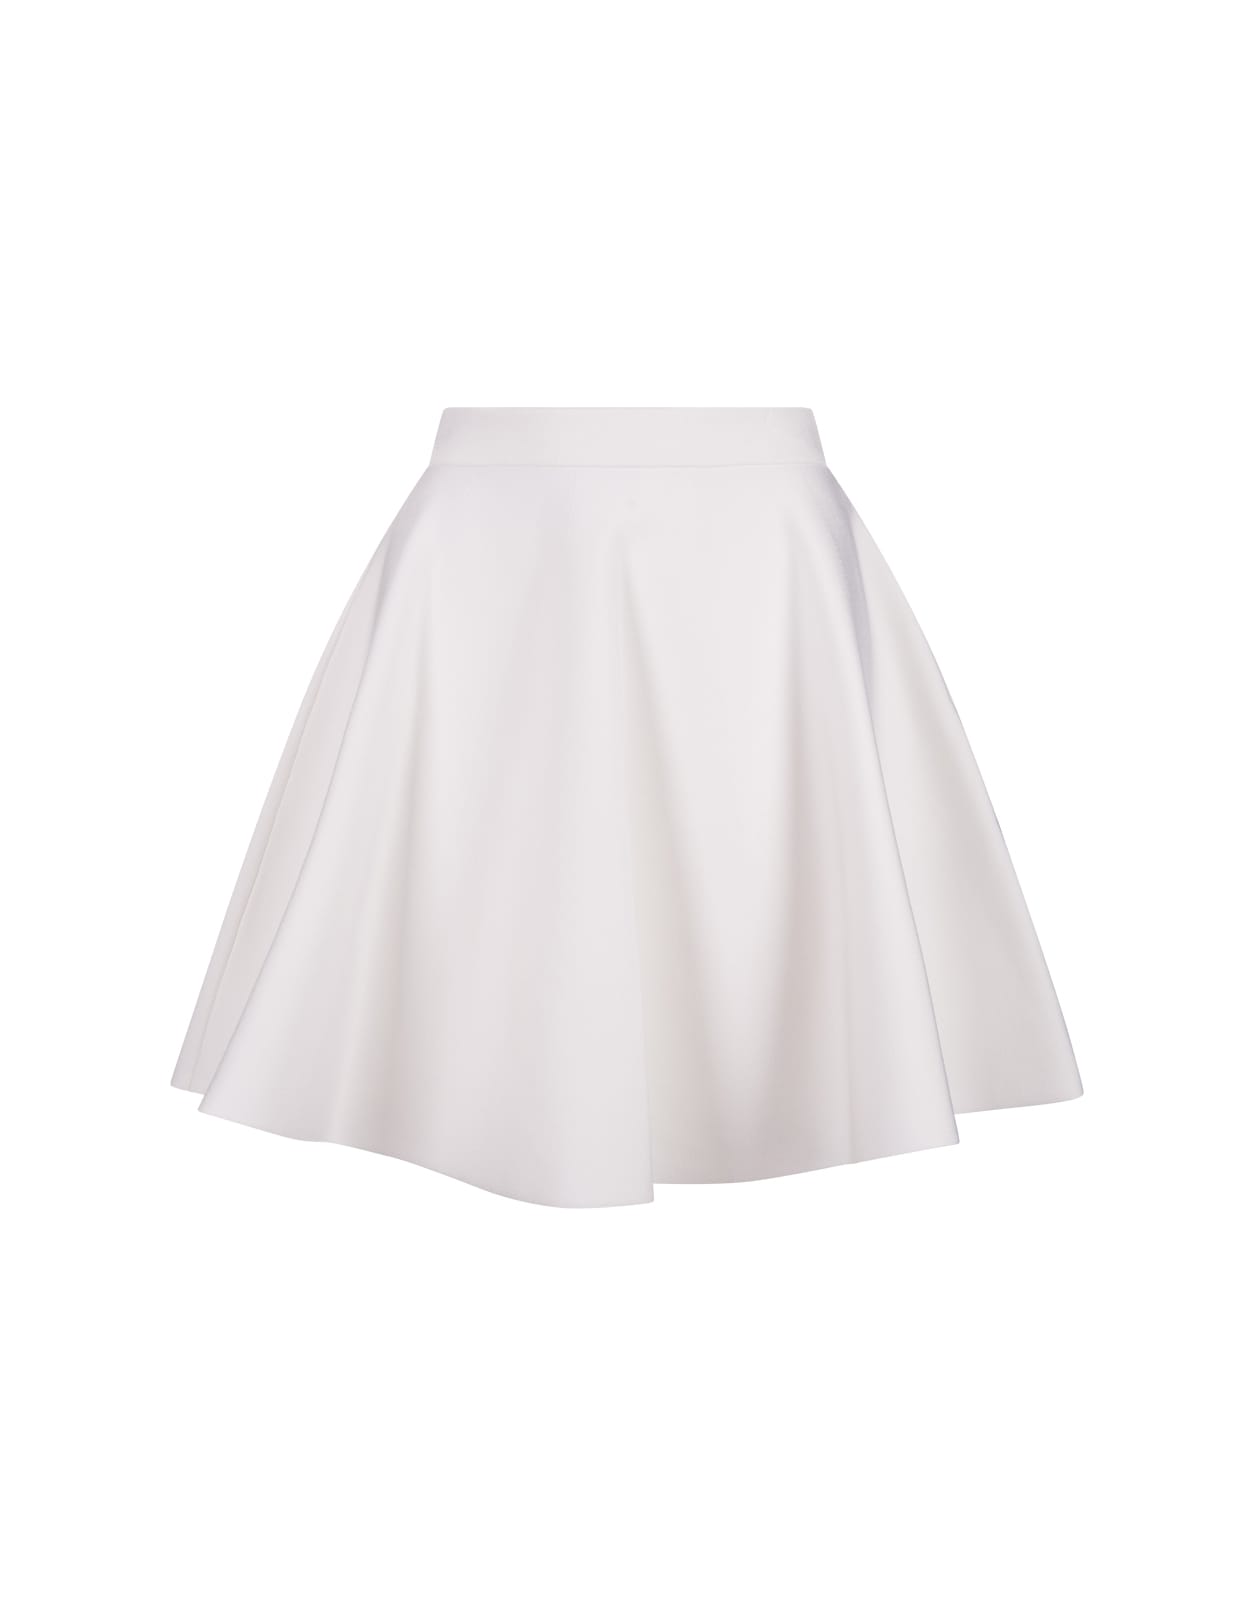 White Short Flared Skirt